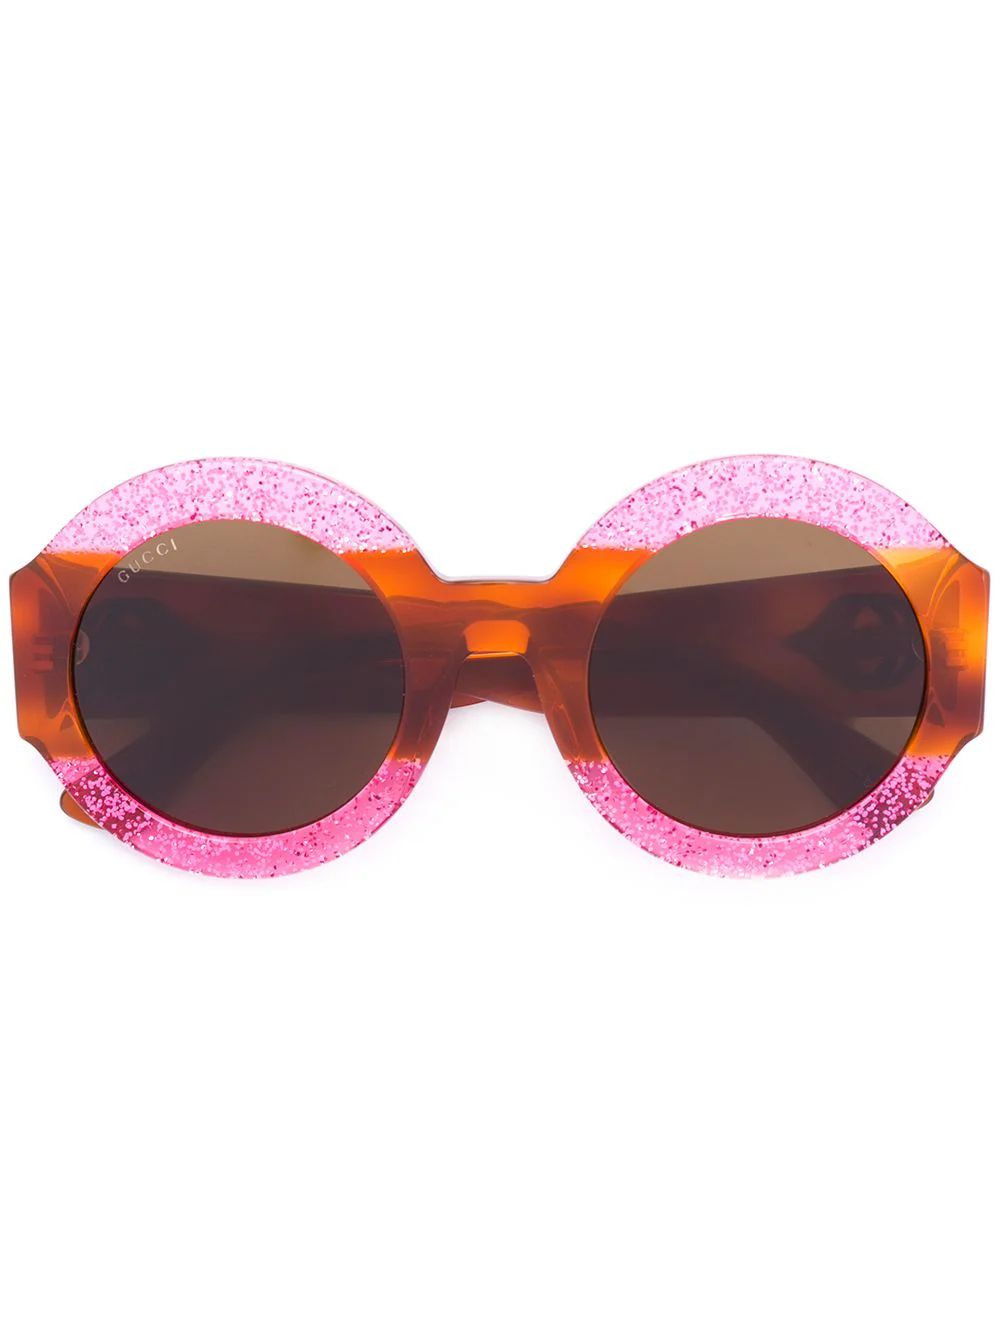 Gucci Eyewear glitter tortoiseshell round sunglasses - Brown | FarFetch US